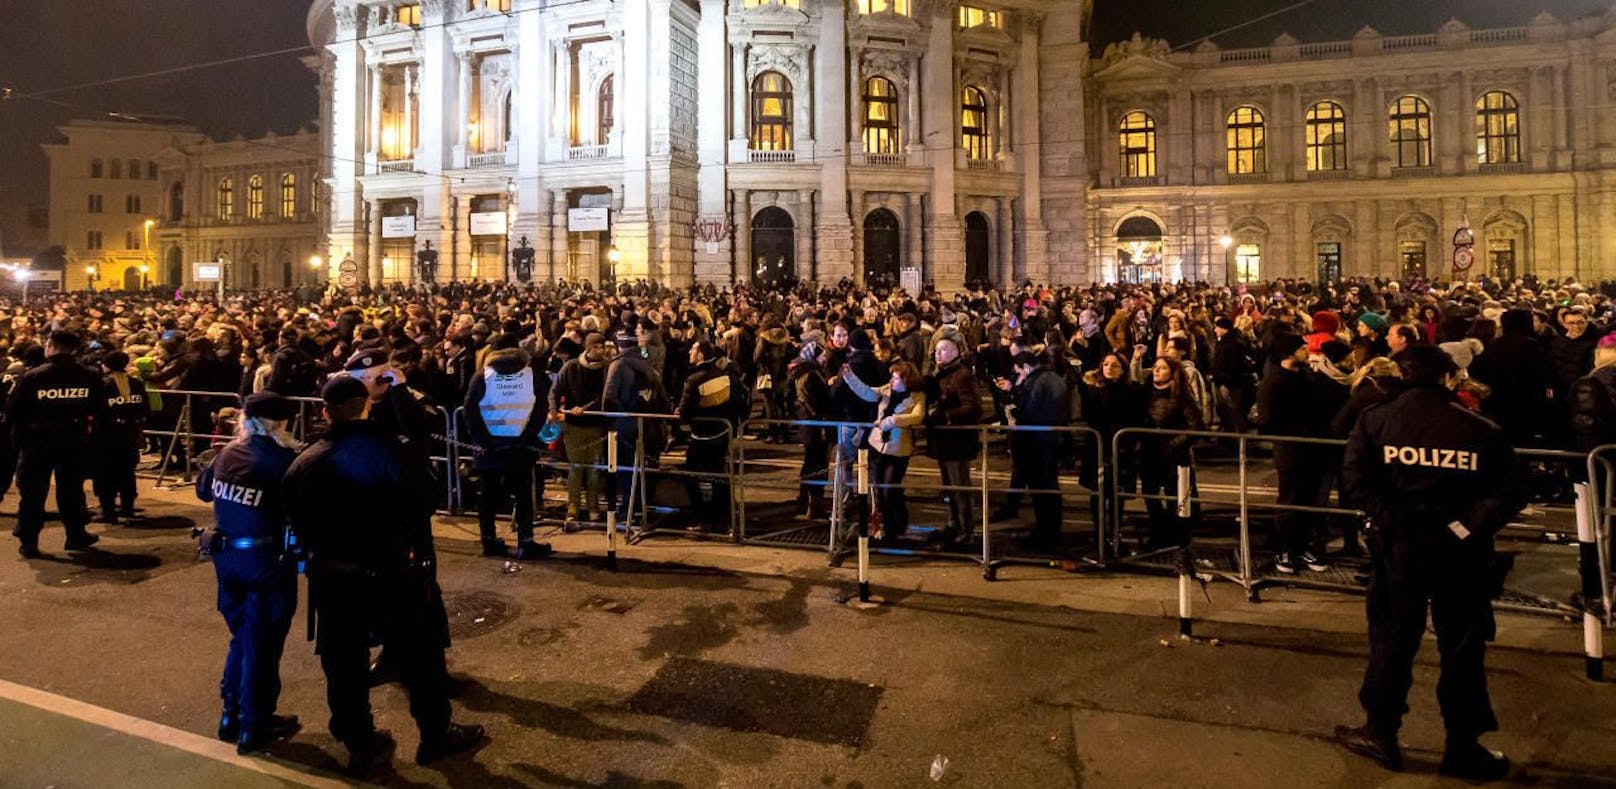 Zu Silvester versammeln sich in ganz Wien hunderttausende Menschen, um gemeinsam den Rutsch in das neue Jahr zu feiern. Für Sicherheit sorgte die Polizei.